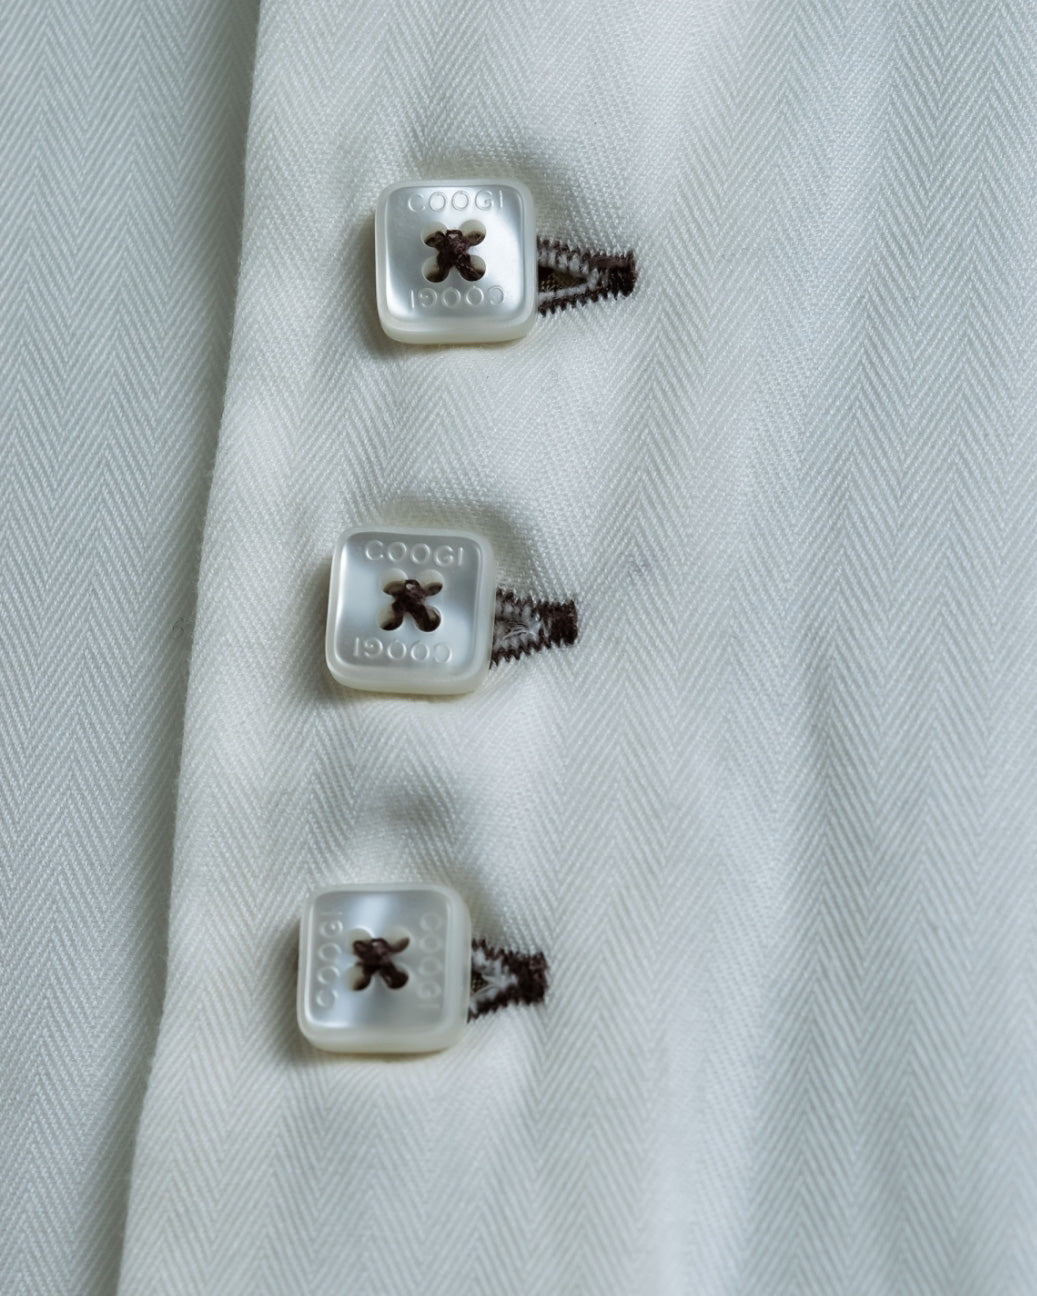 "COOGI" 3 Button Design 5XL Over White Shirt